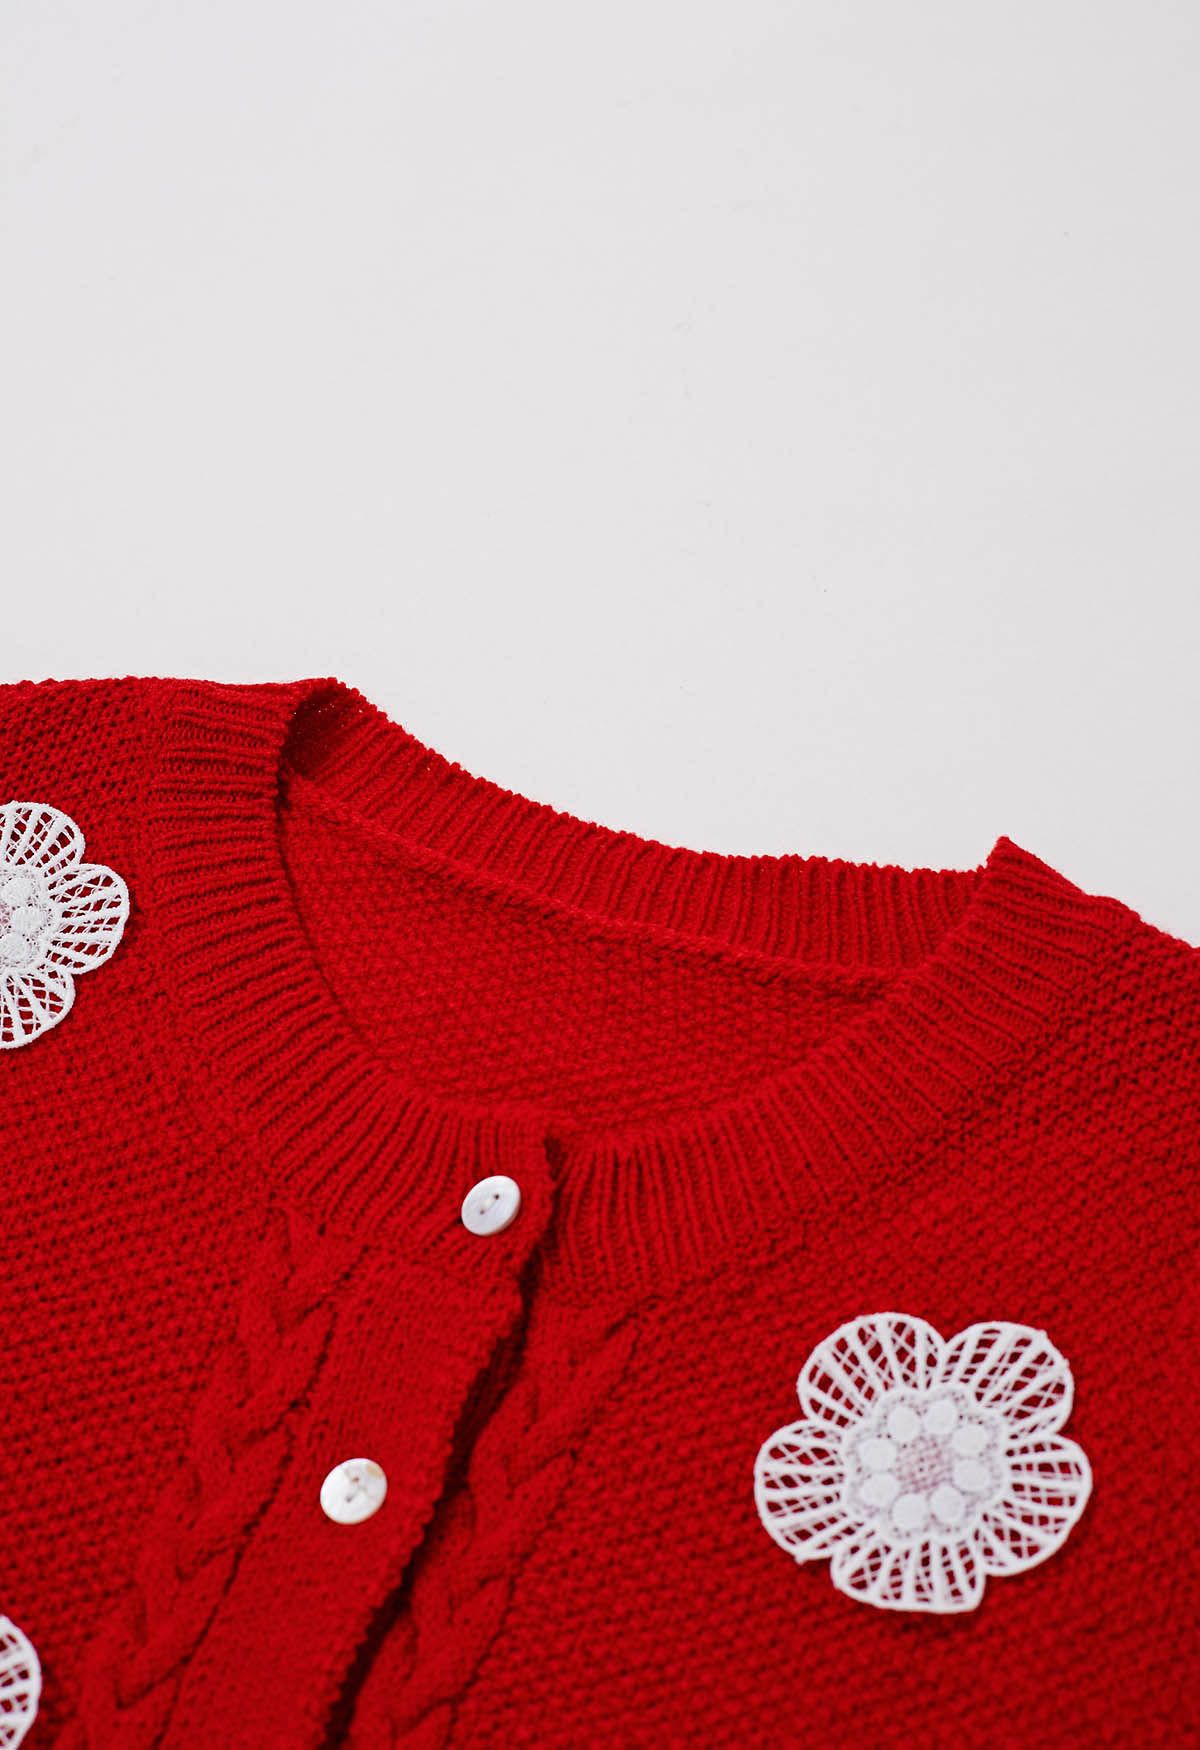 Cárdigan de punto de manga corta adornado con flores de crochet en rojo